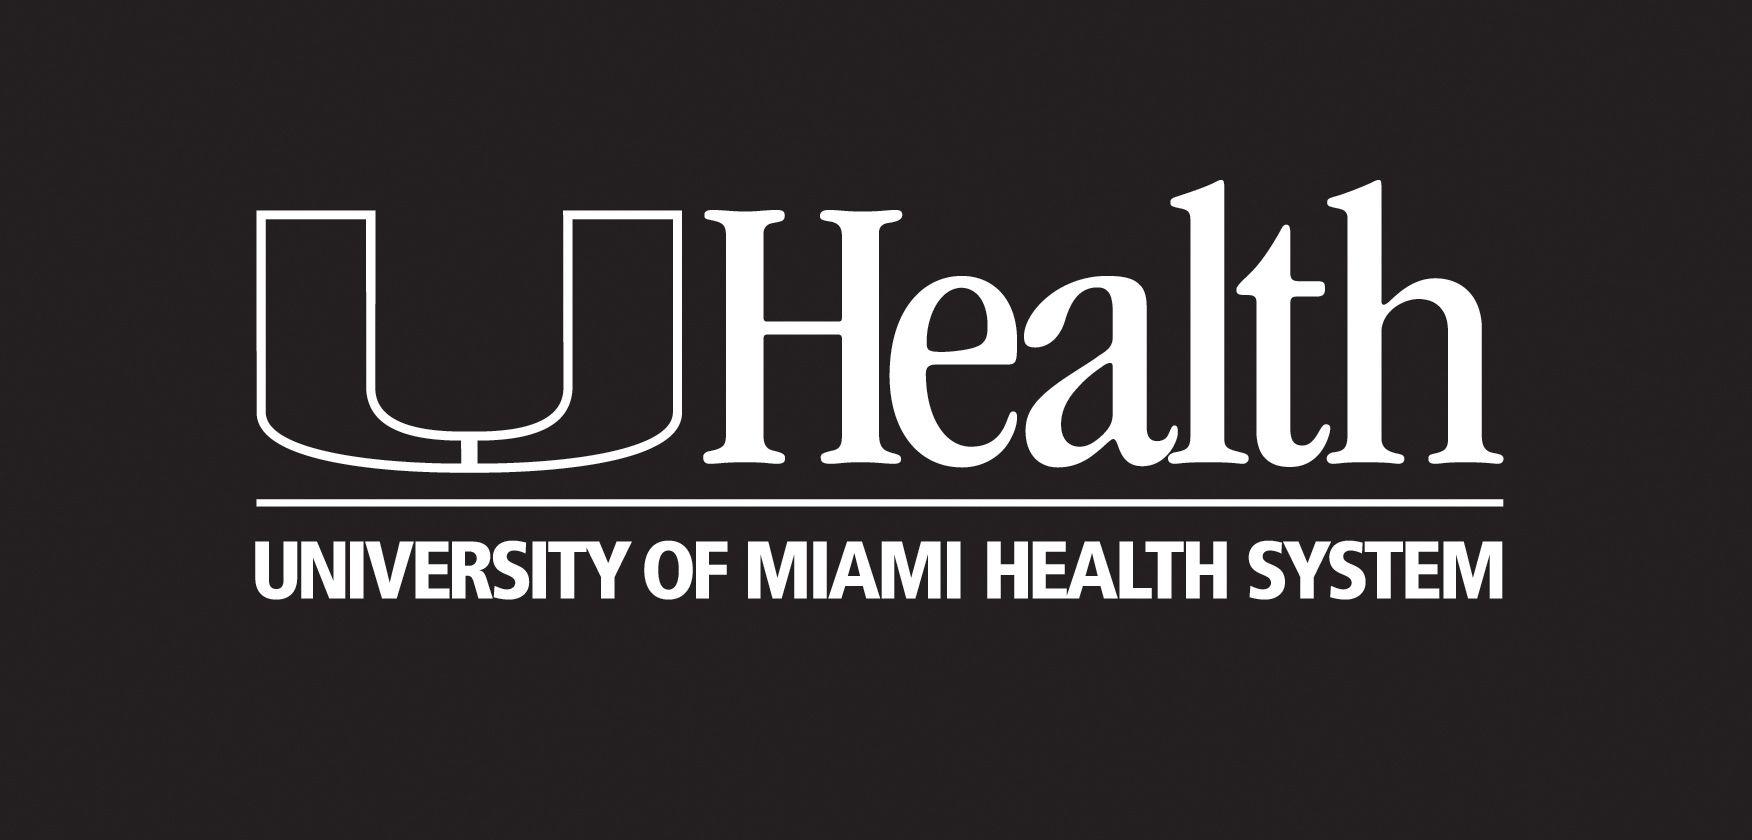 UHealth Logo - Logos - Marketing - About UHealth - University of Miami Health ...